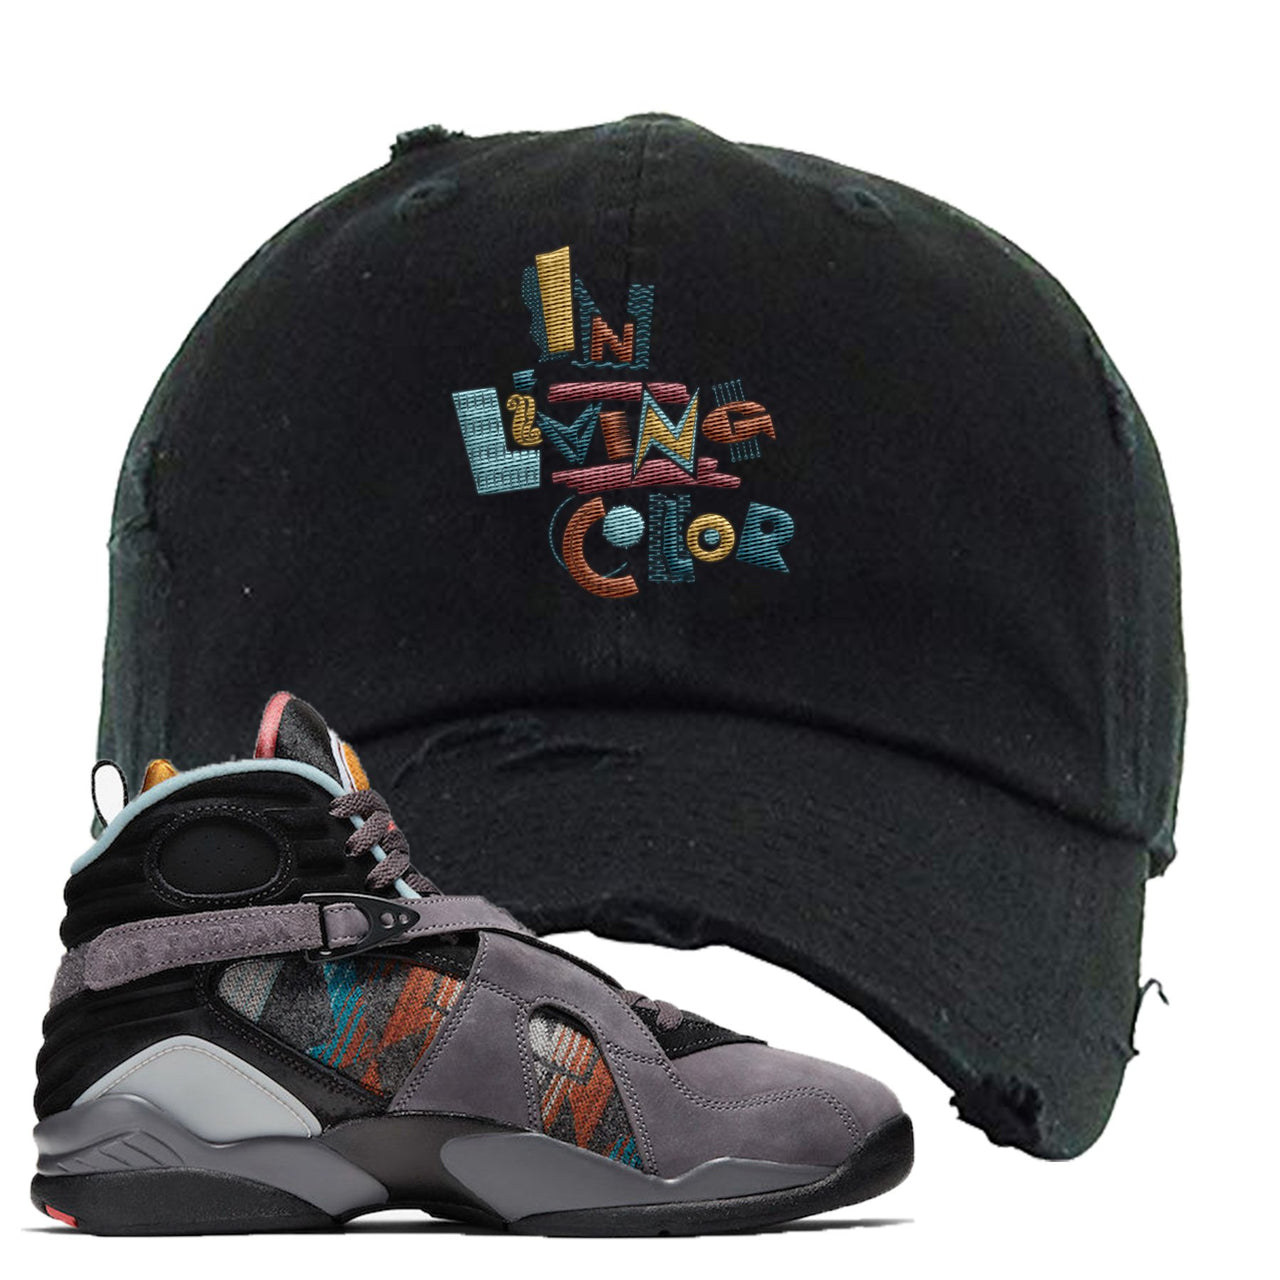 Jordan 8 N7 Pendleton In Living Color Black Sneaker Hook Up Distressed Dad Hat